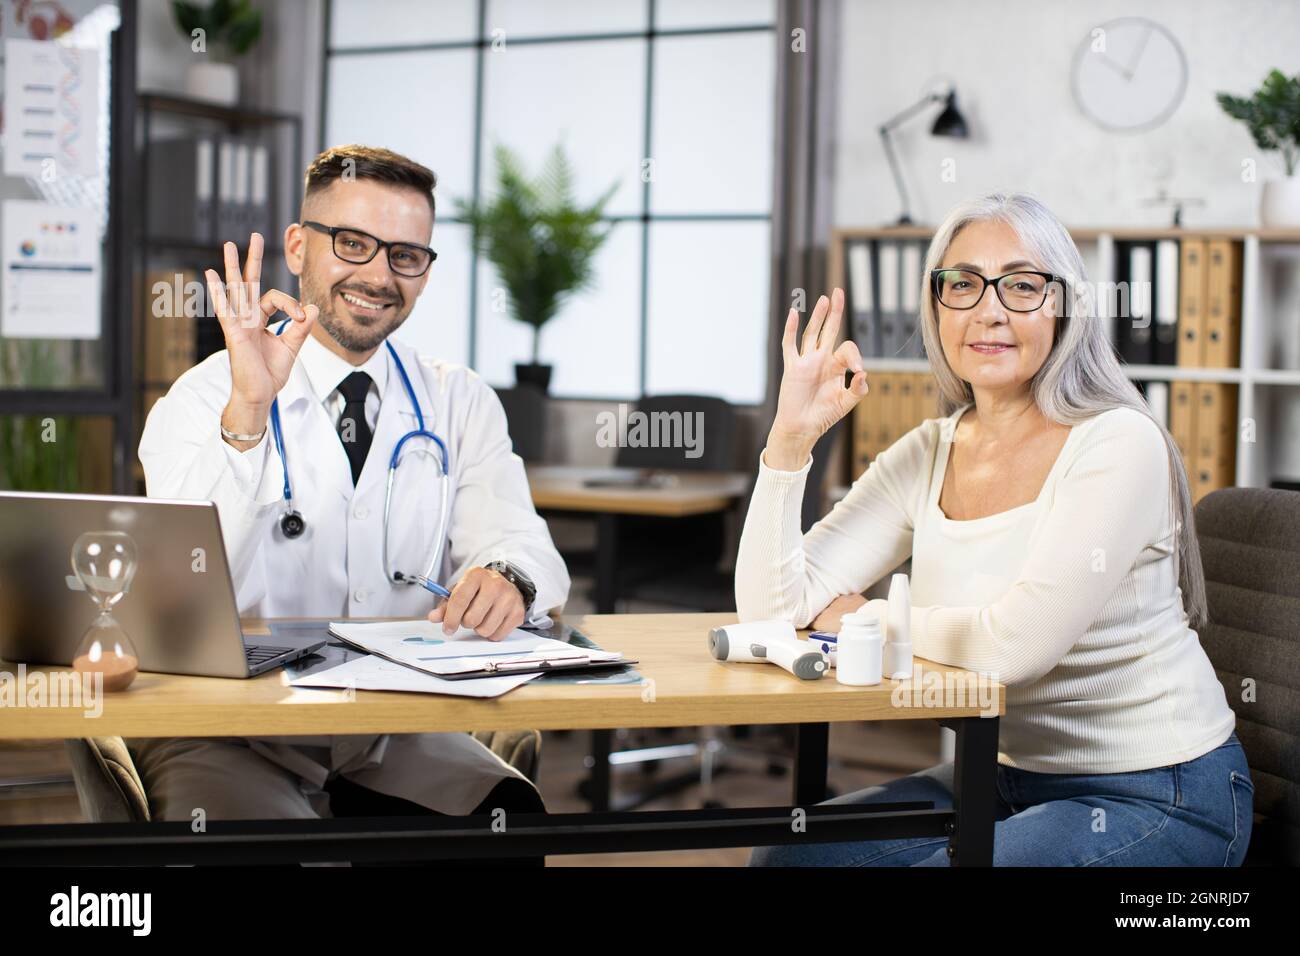 Kaukasischer bärtiger Arzt in weißem Laborkittel und Brillen, der mit einer pensionierten Dame am Schreibtisch saß, vor der Kamera lächelte und ein OK cooles Schild zeigte. Konzept von Menschen, Behandlung und Gesundheitsfürsorge. Stockfoto